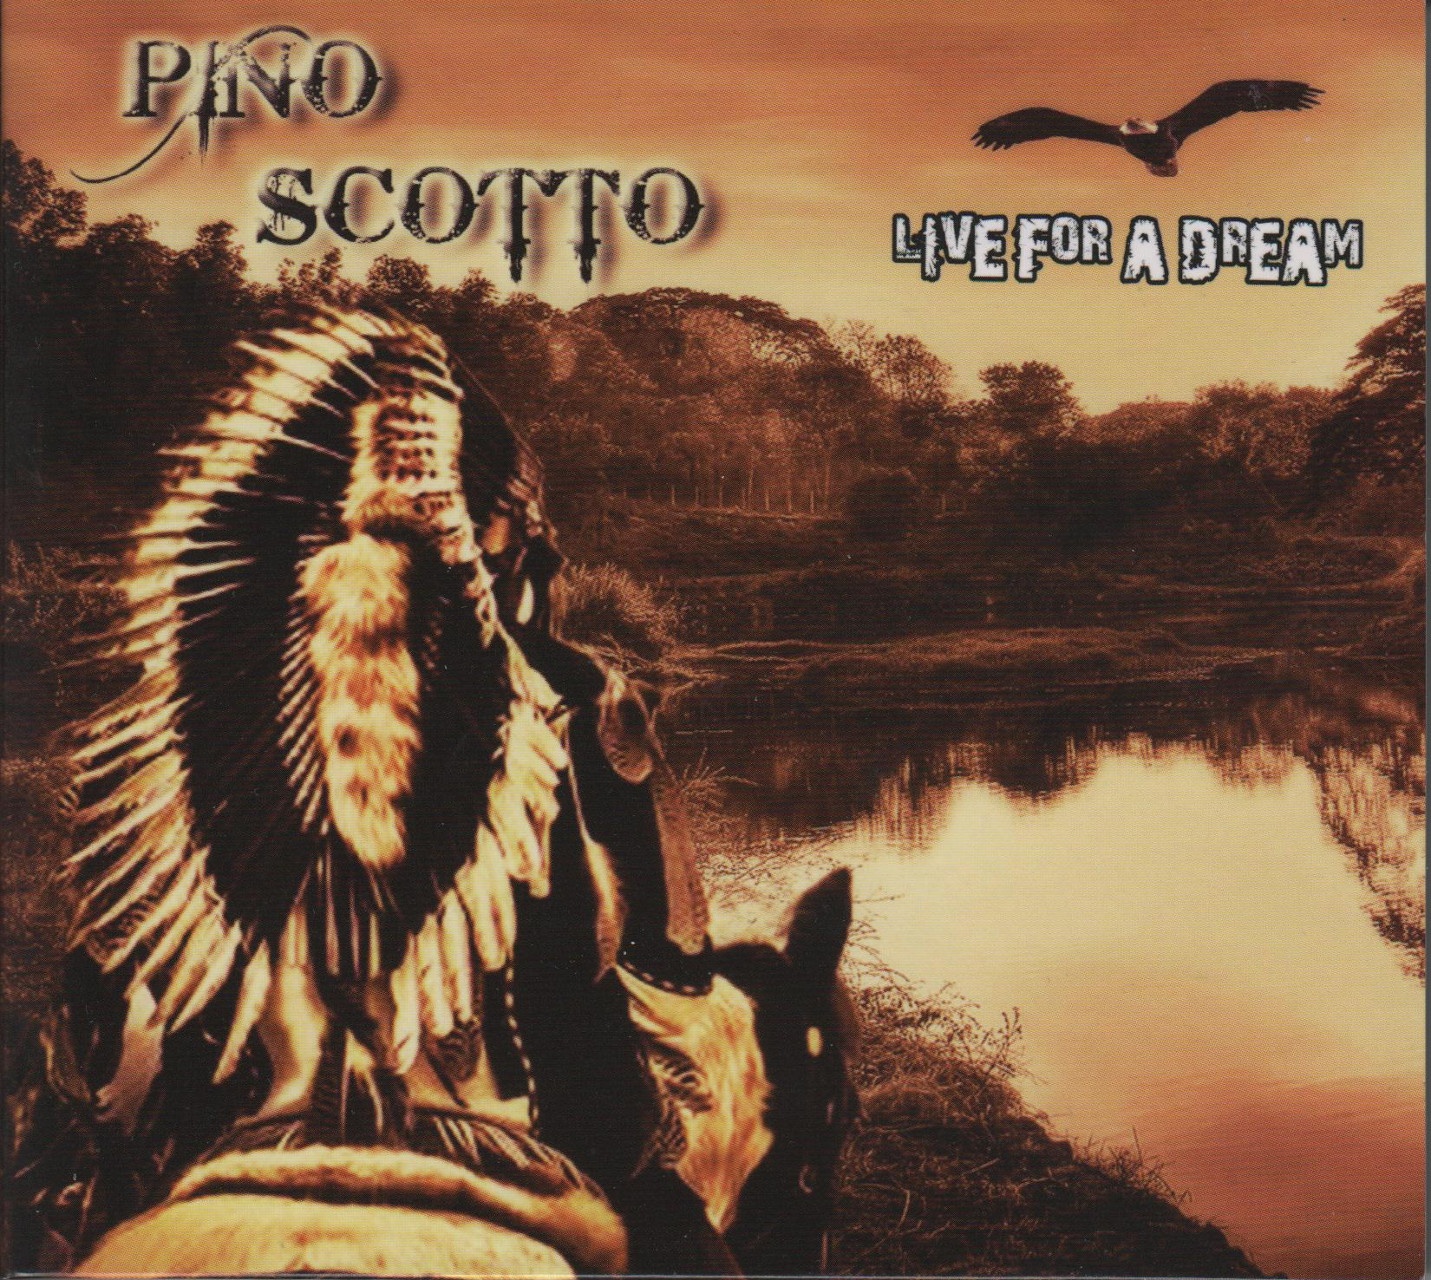 Pino Scotto - Live for a dream